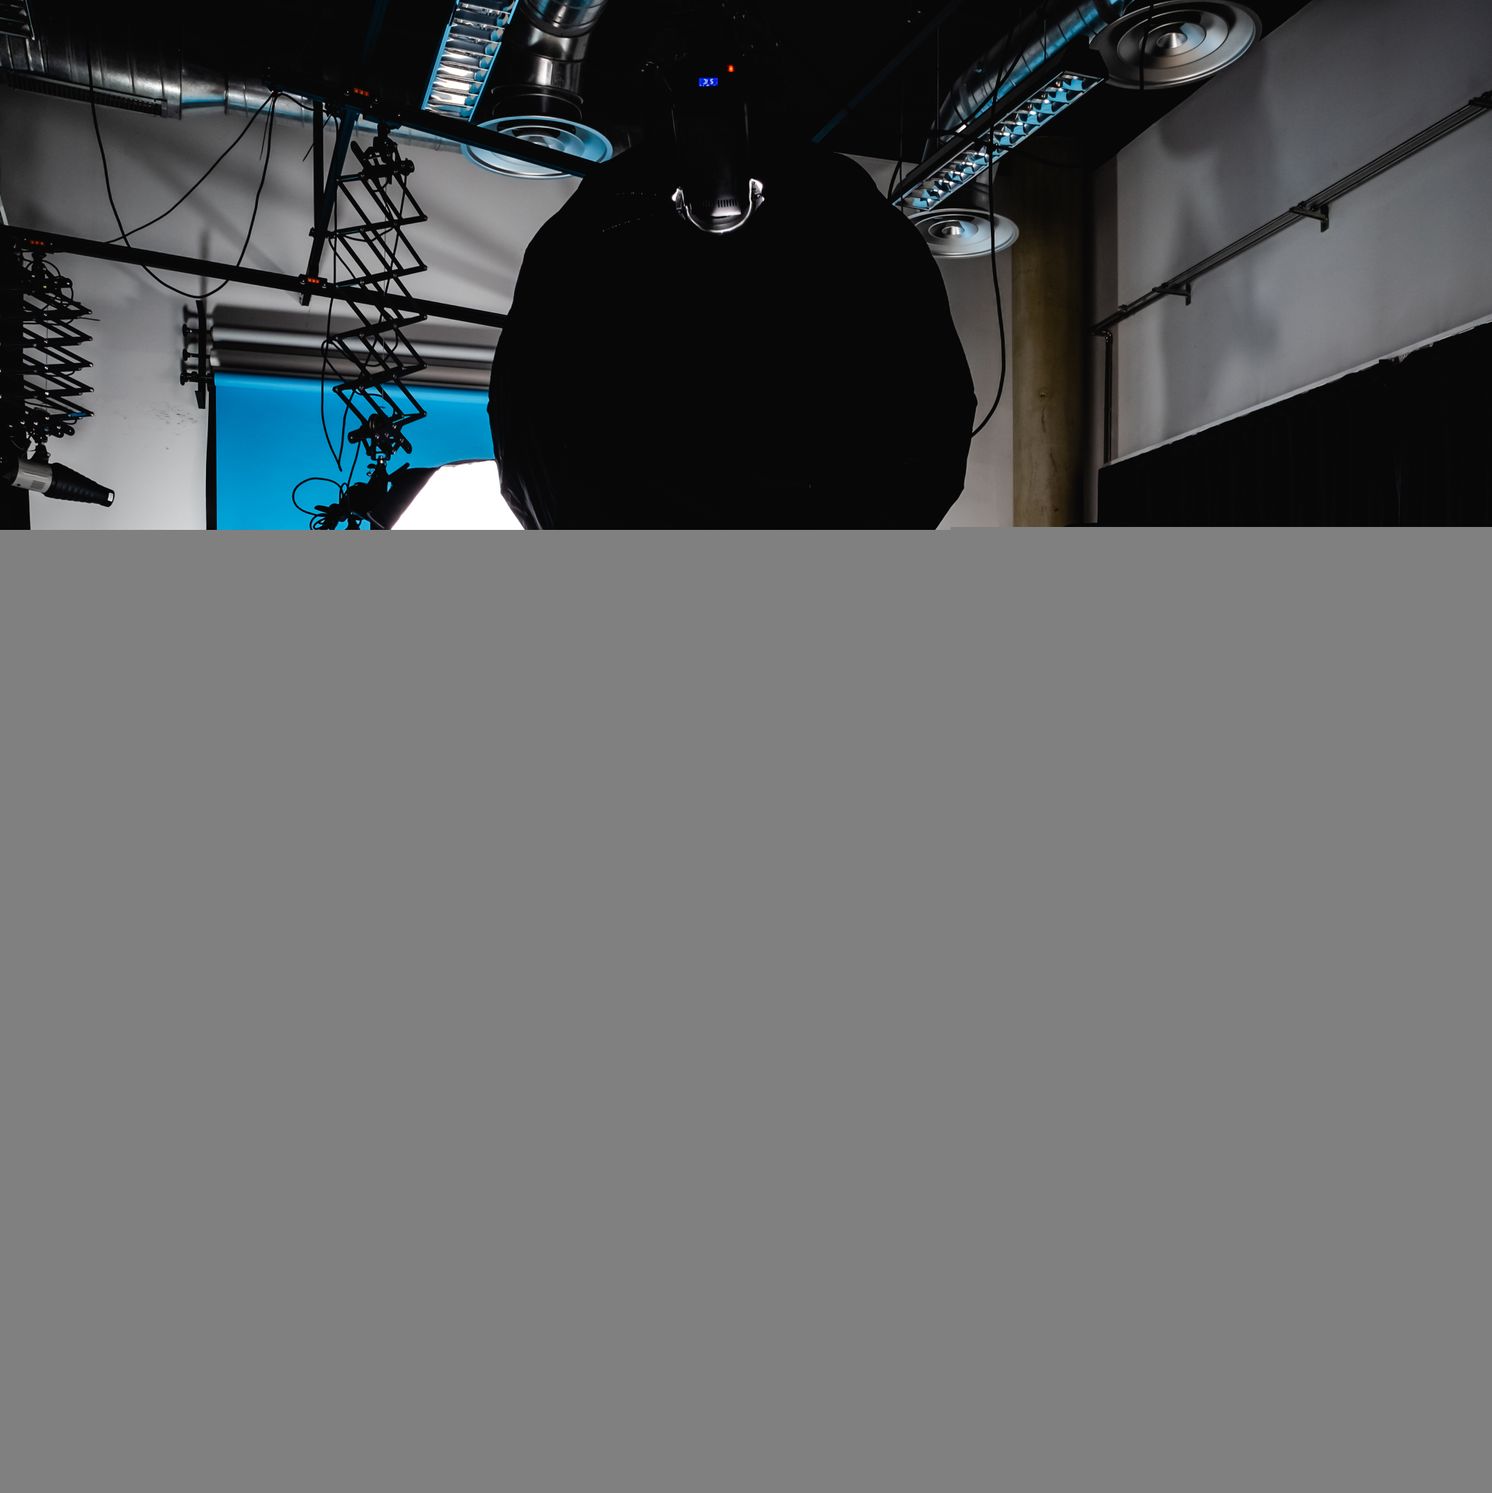 empty-photo-studio-with-equipment-2022-12-09-01-34-17-utc